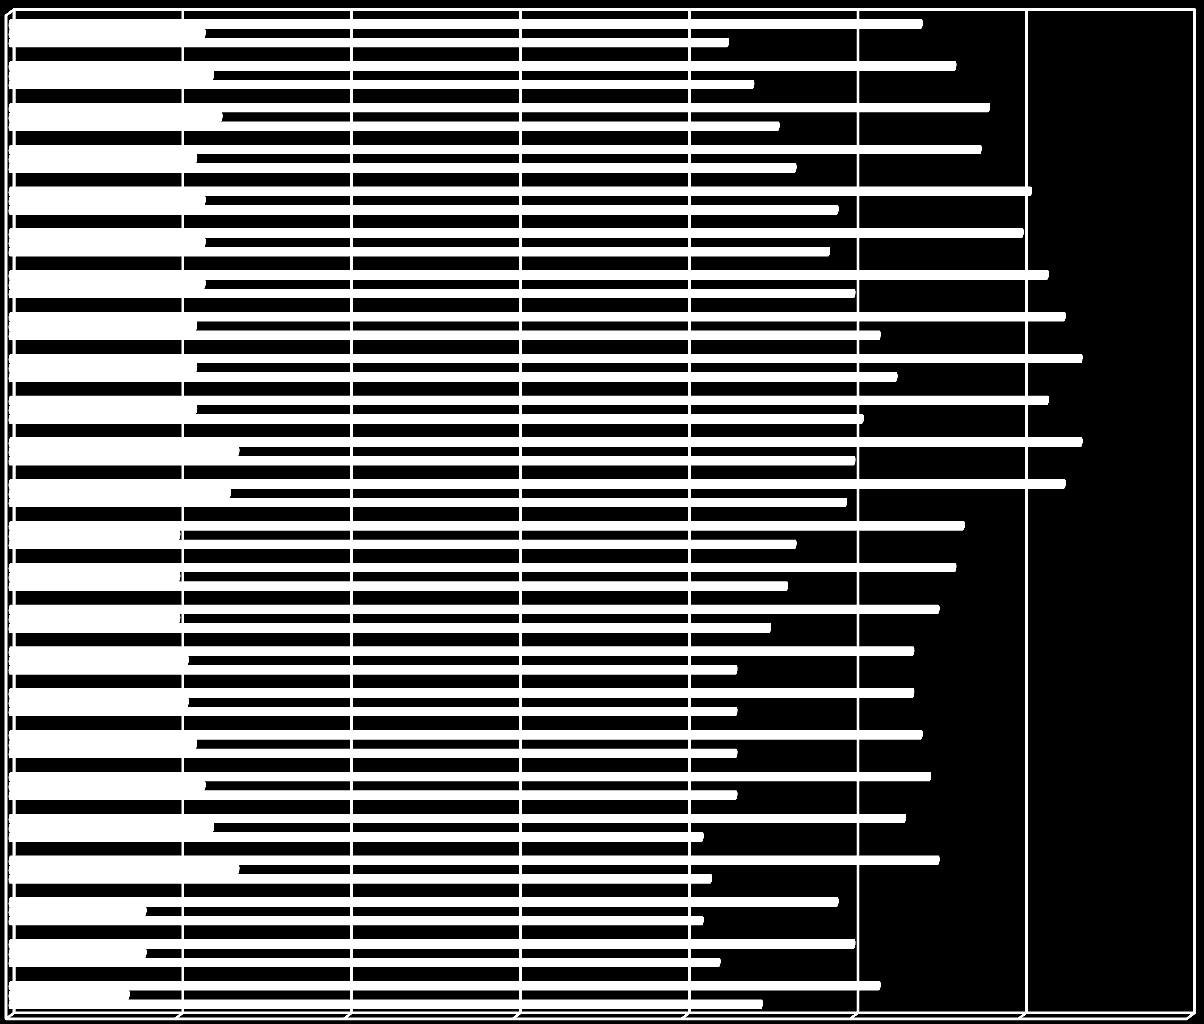 Alkoholin kulutus Suomessa Alkoholijuomien keskimääräinen kulutus 15 vuotta täyttänyttä asukasta kohden 100-prosenttisena alkoholina (litraa) 2015 2014 2013 2012 2011 2010 2009 2008 2007 2006 2005